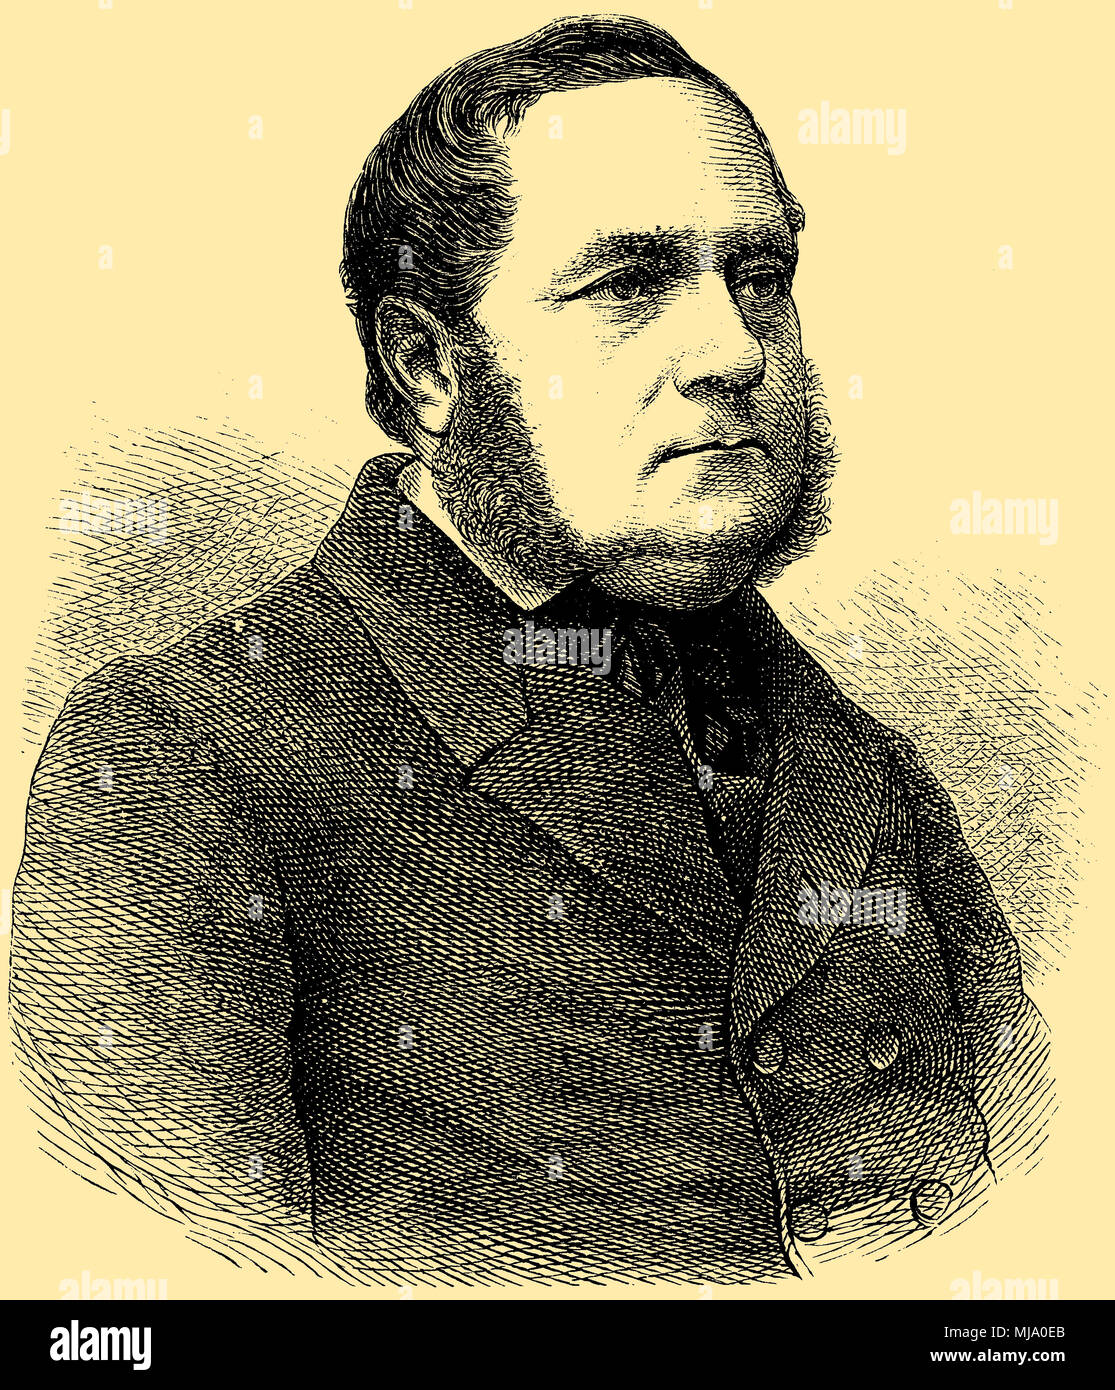 Adalbert Stifter (born October 23, 1806, died January 28, 1868 ...